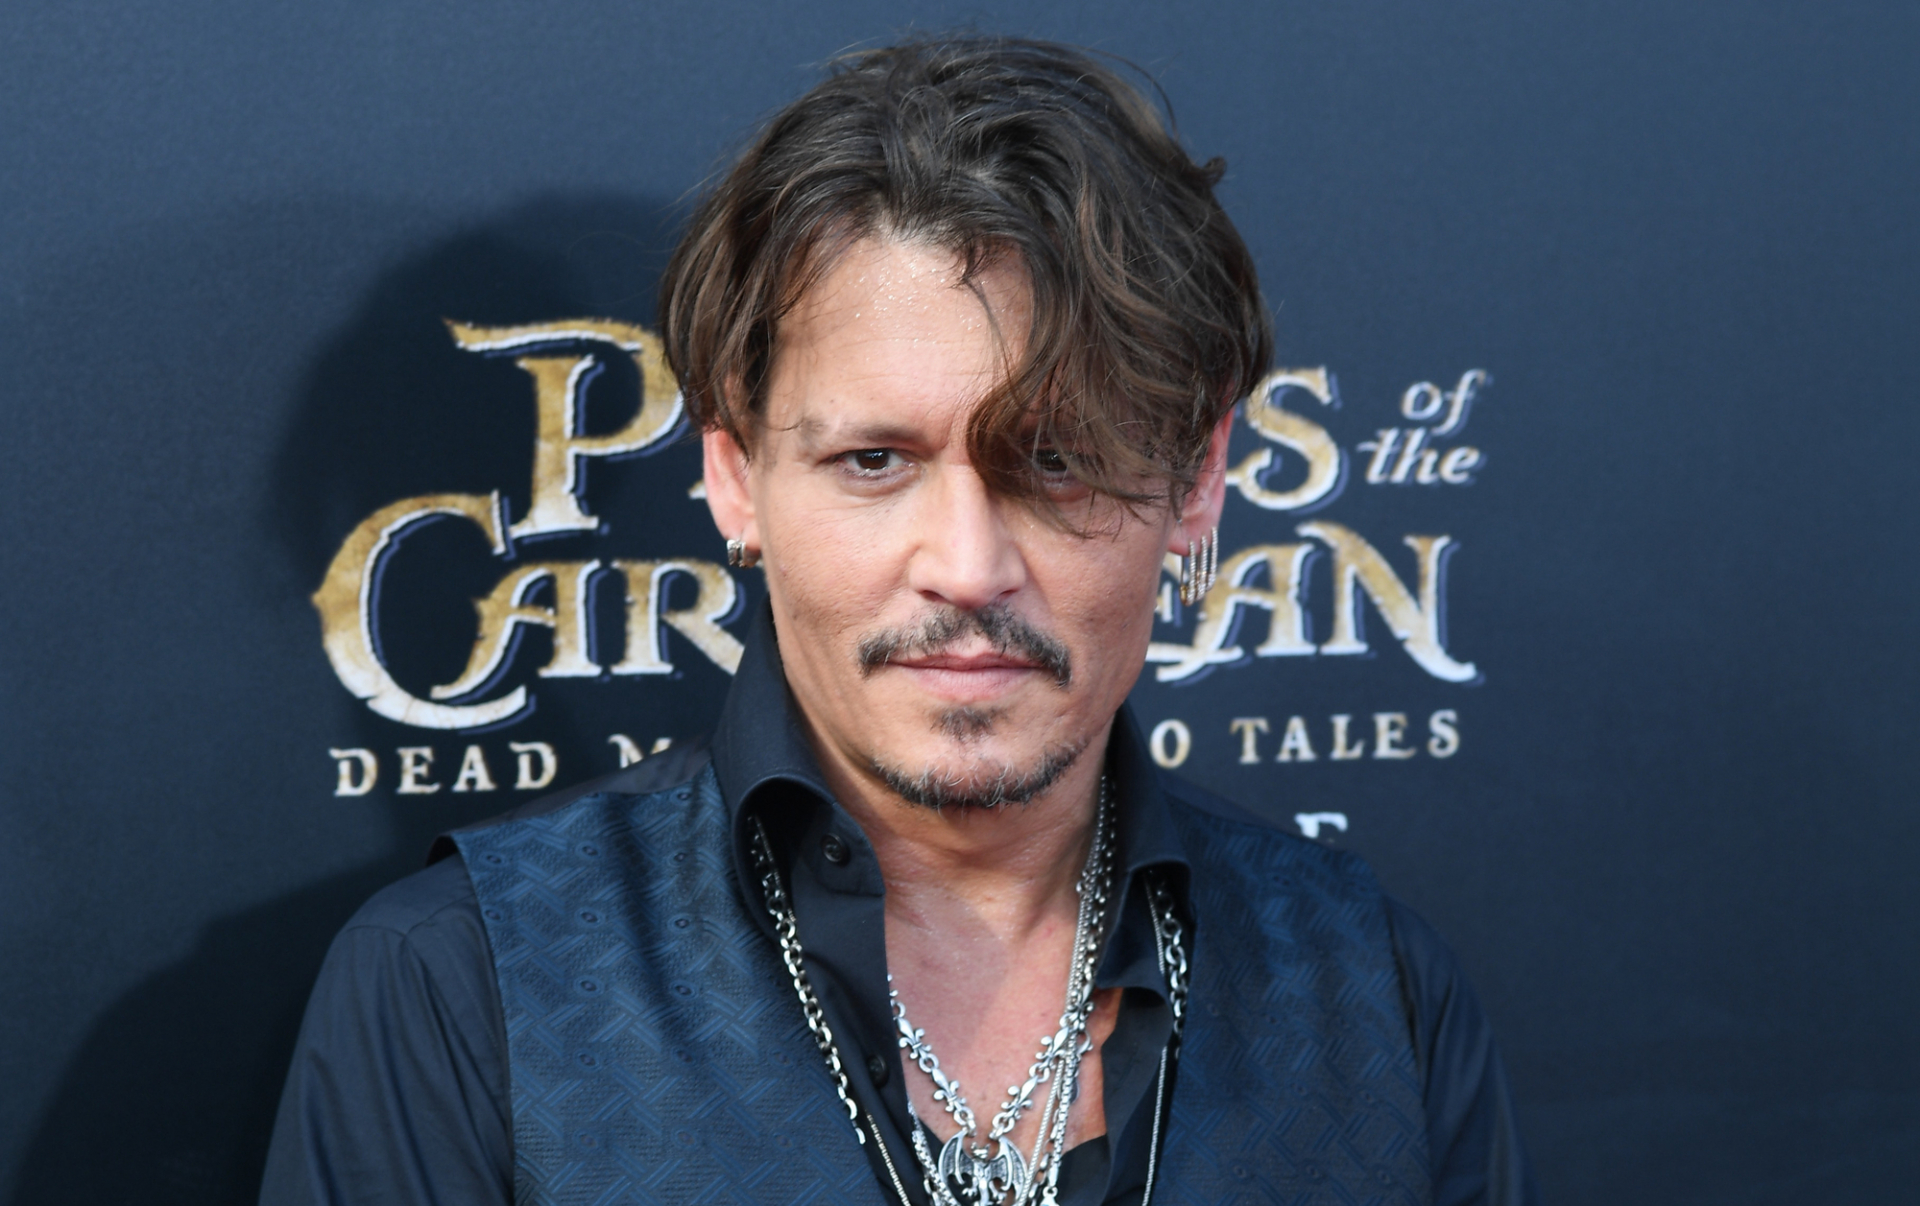 Kész káosz Johnny Depp filmjének magyarországi forgatása